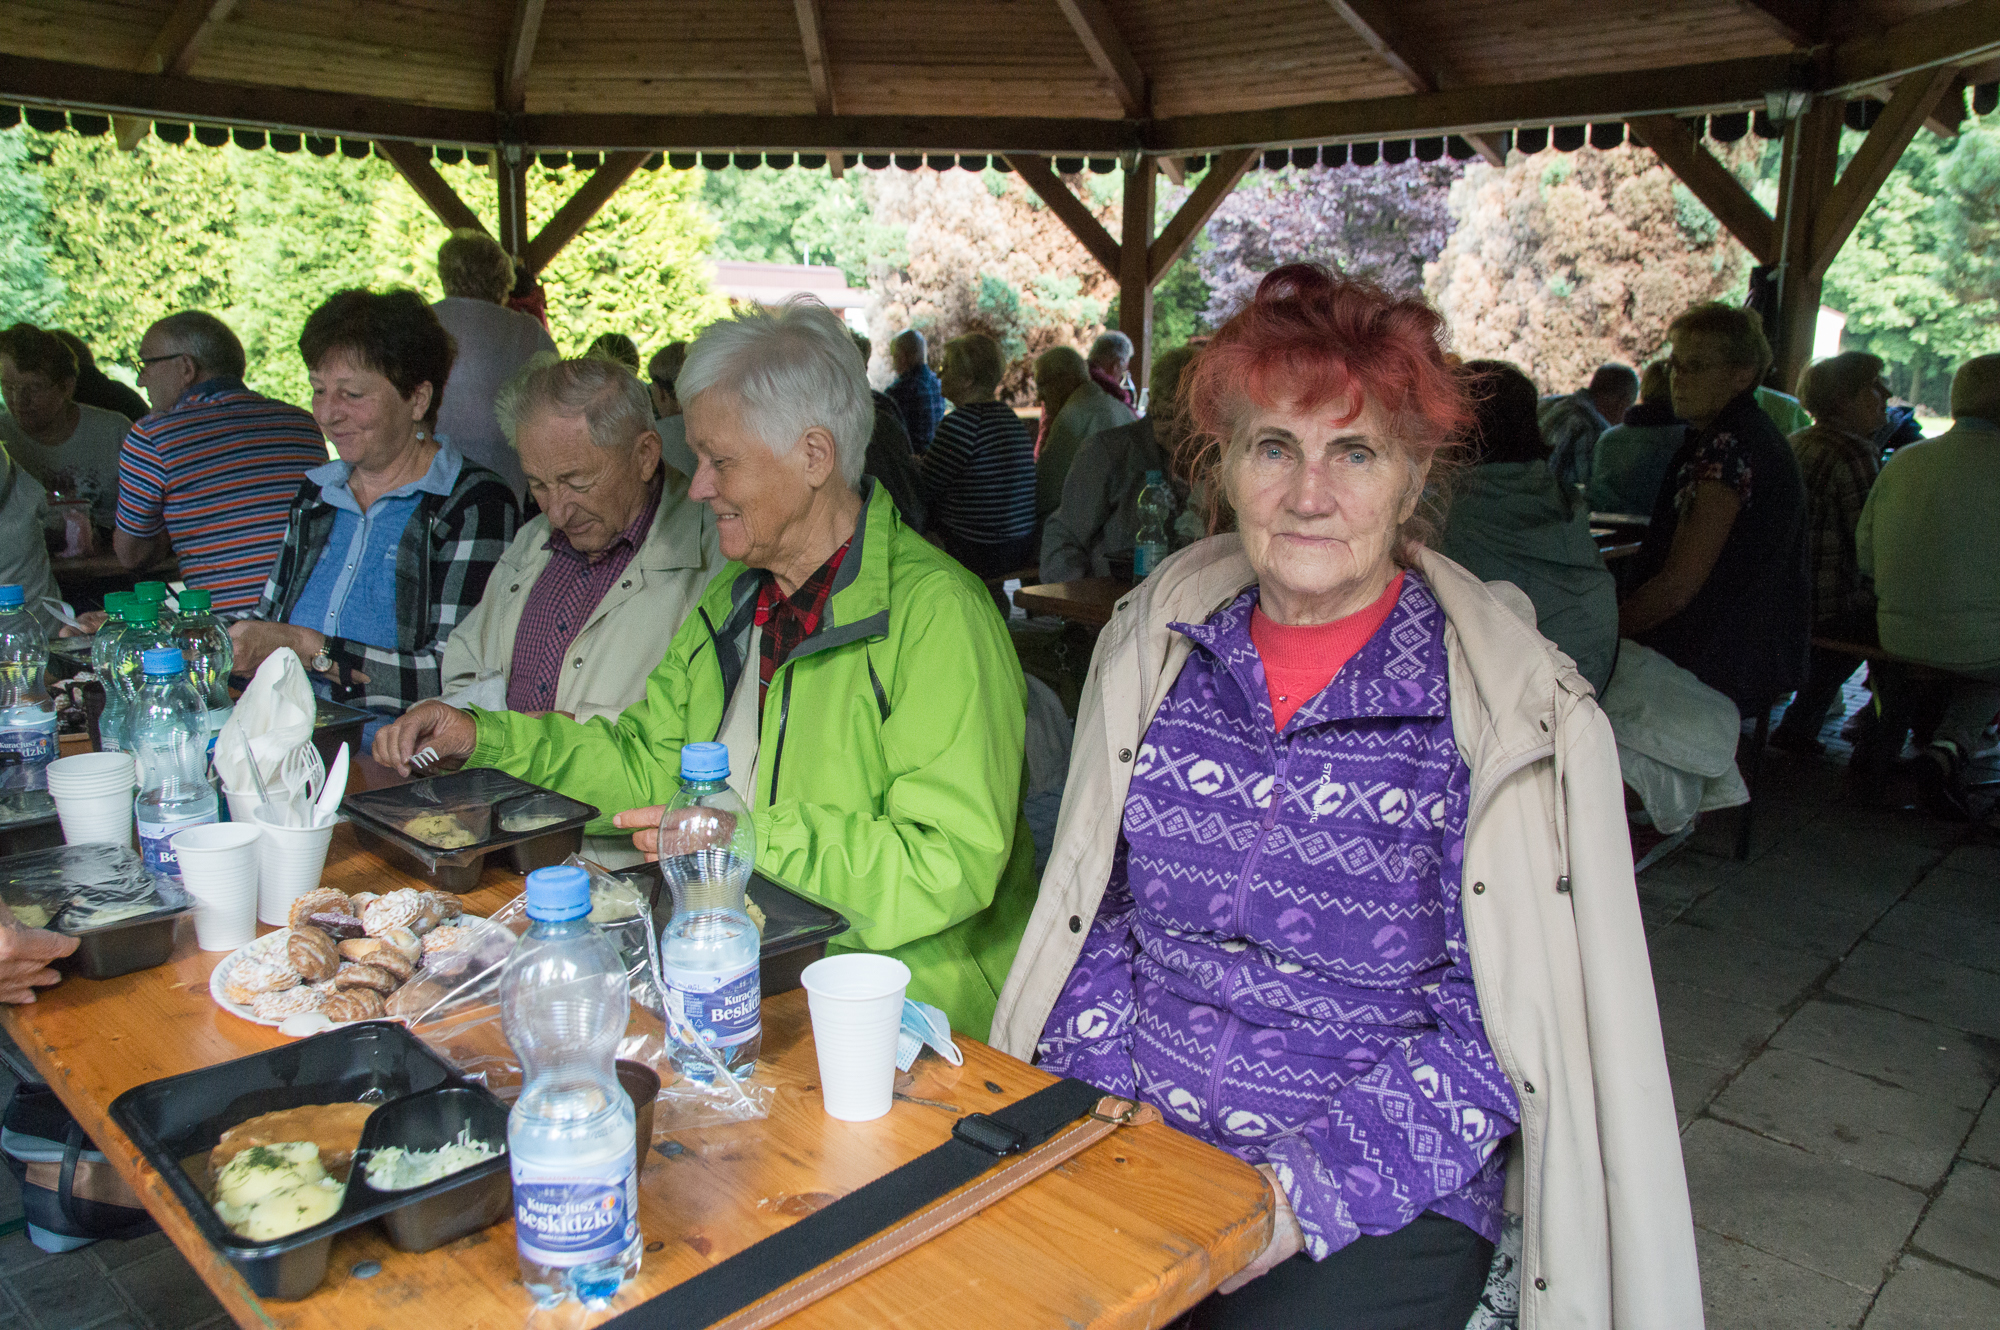 W zabawie wzięło udział ponad 70 osób. Na pierwszym planie Aleksandra Jańska - osoba znana w środowisku seniorów, zaangażowana również w działalność Towarzystwa Miłośników Ziemi Raciborskiej.